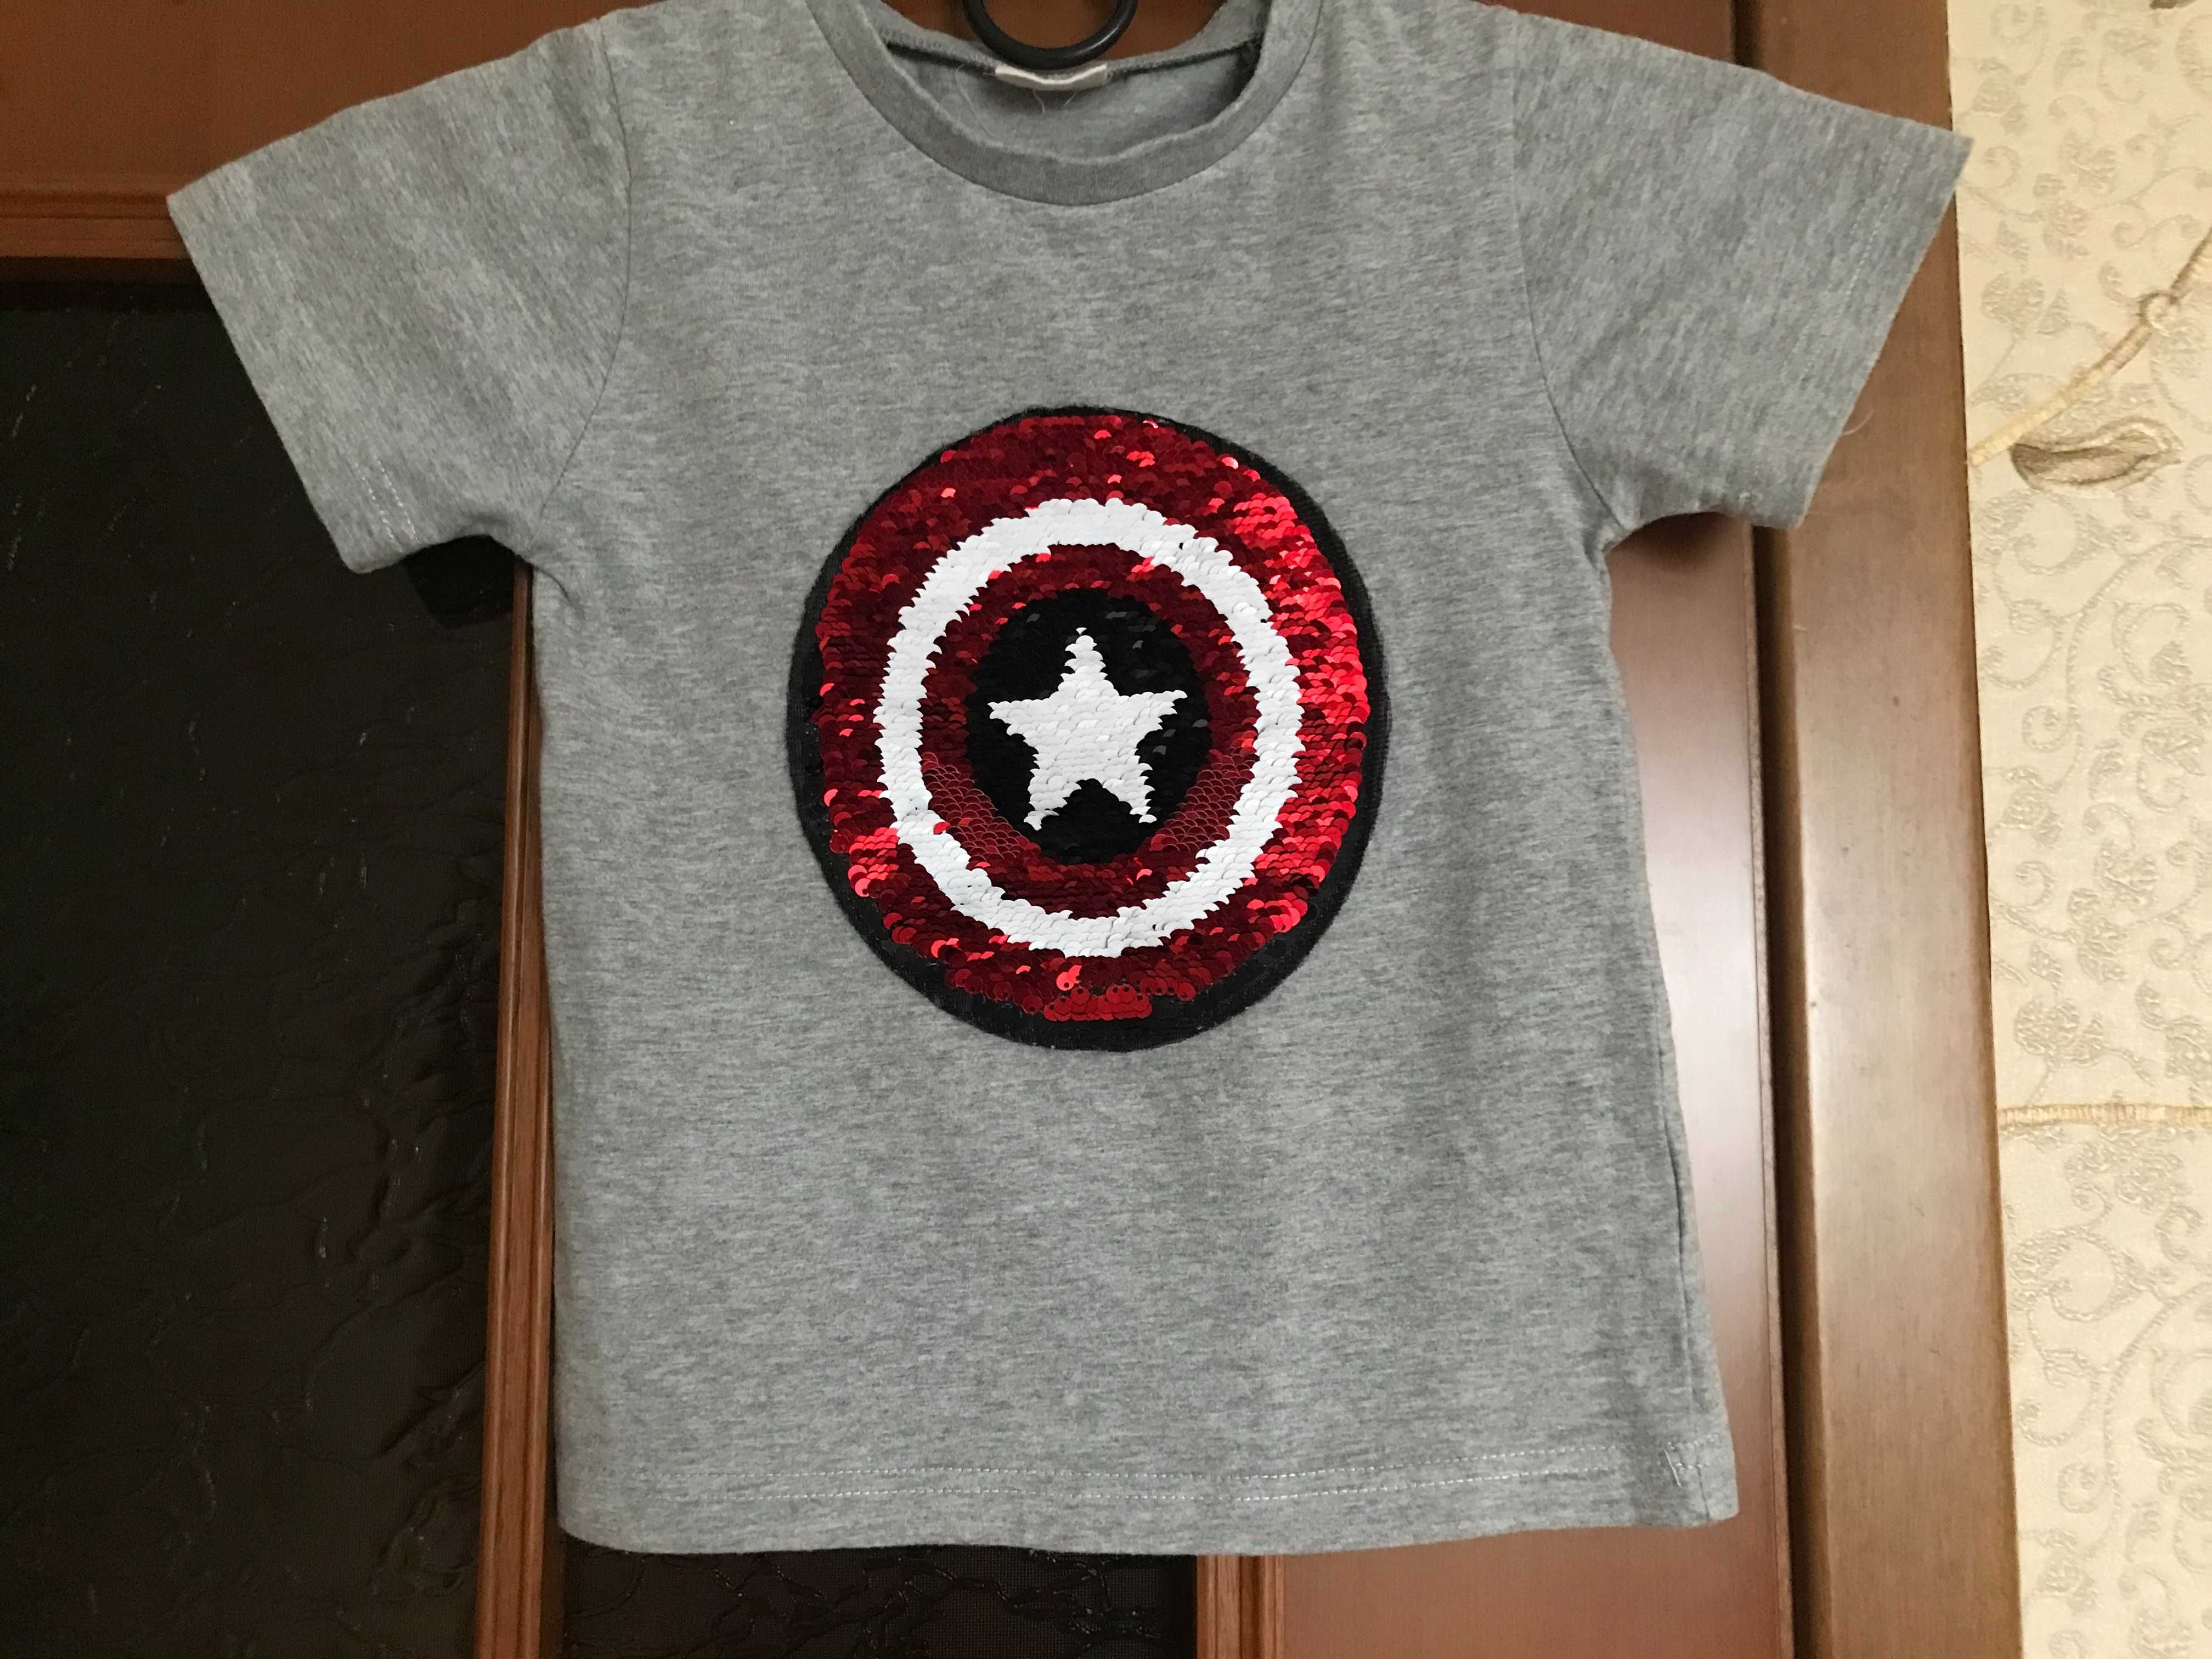 Детская футболка Человек-Паук, с пайетками.